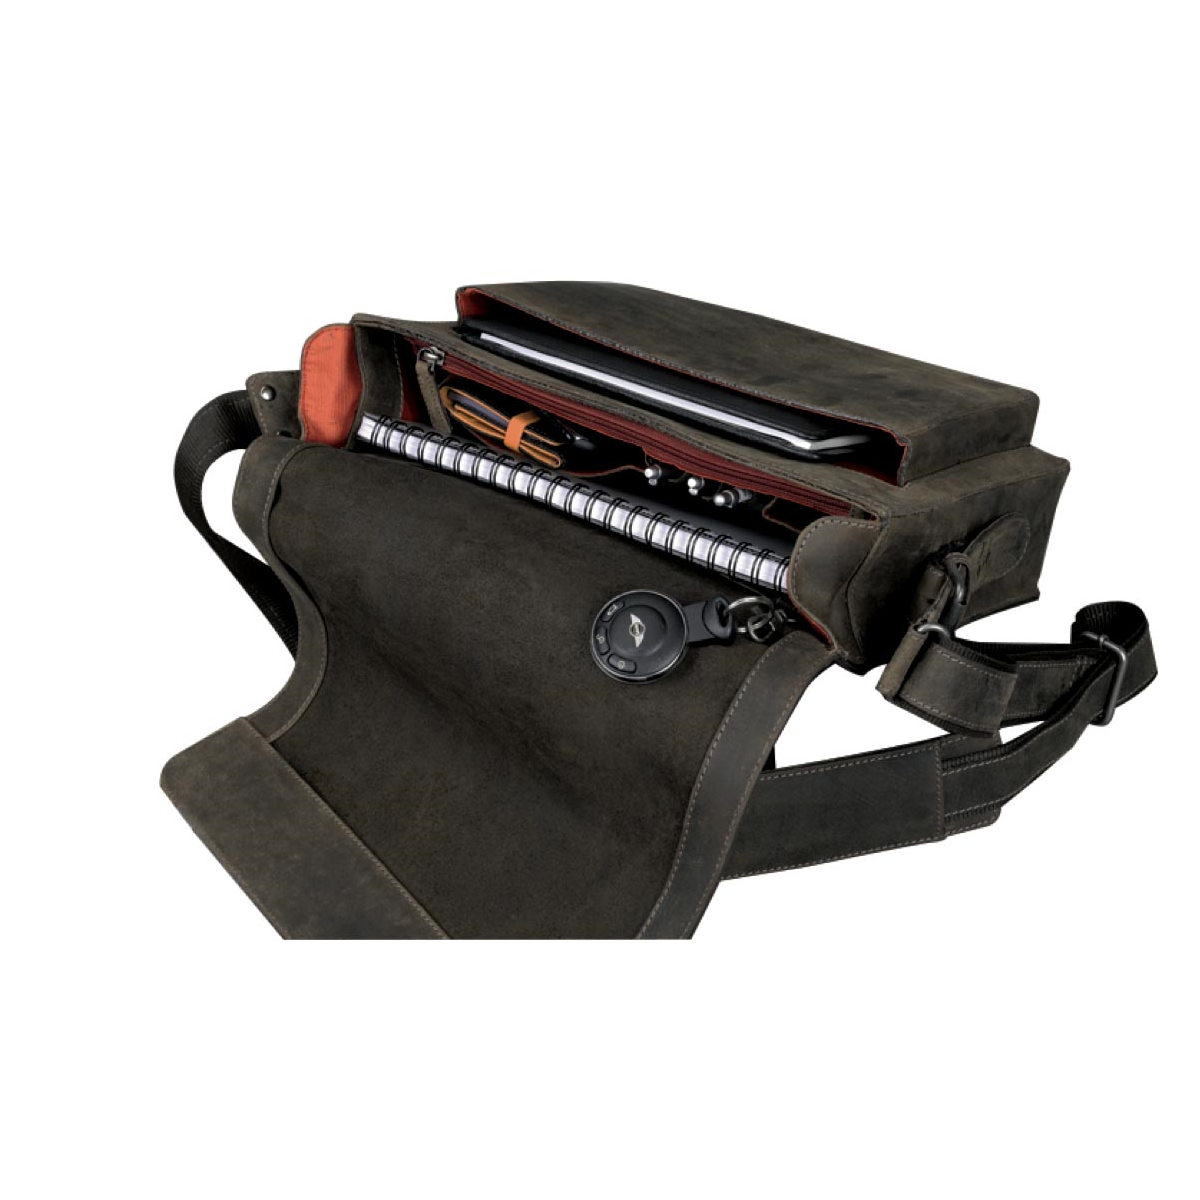 PRIDE & SOUL Leather Shoulder Bag Unisex, 47137 braun, CANDY